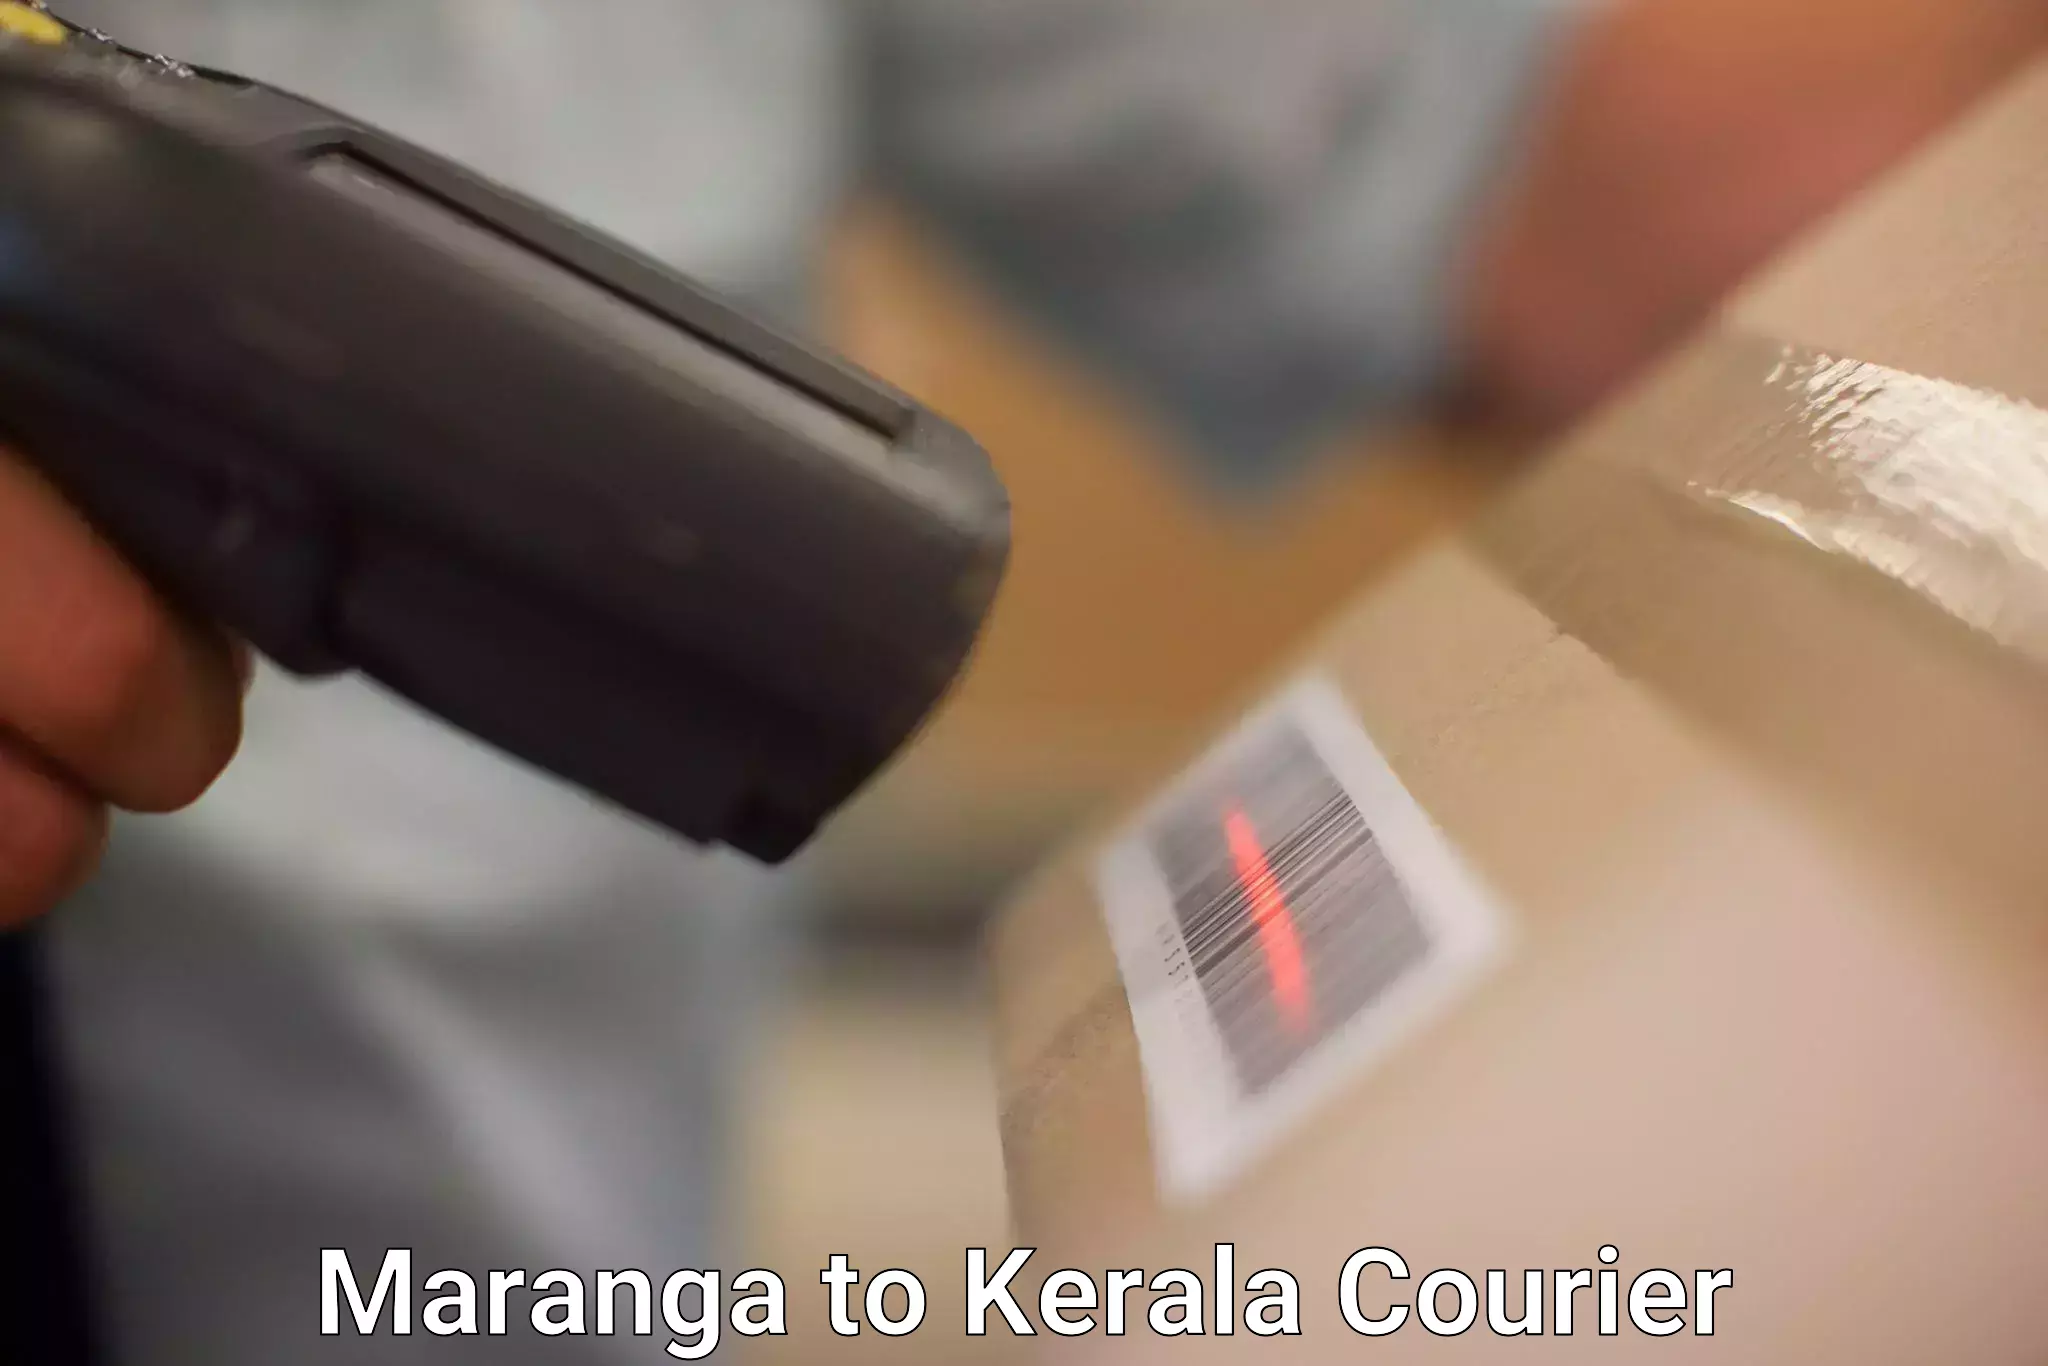 Flexible delivery schedules in Maranga to IIIT Kottayam